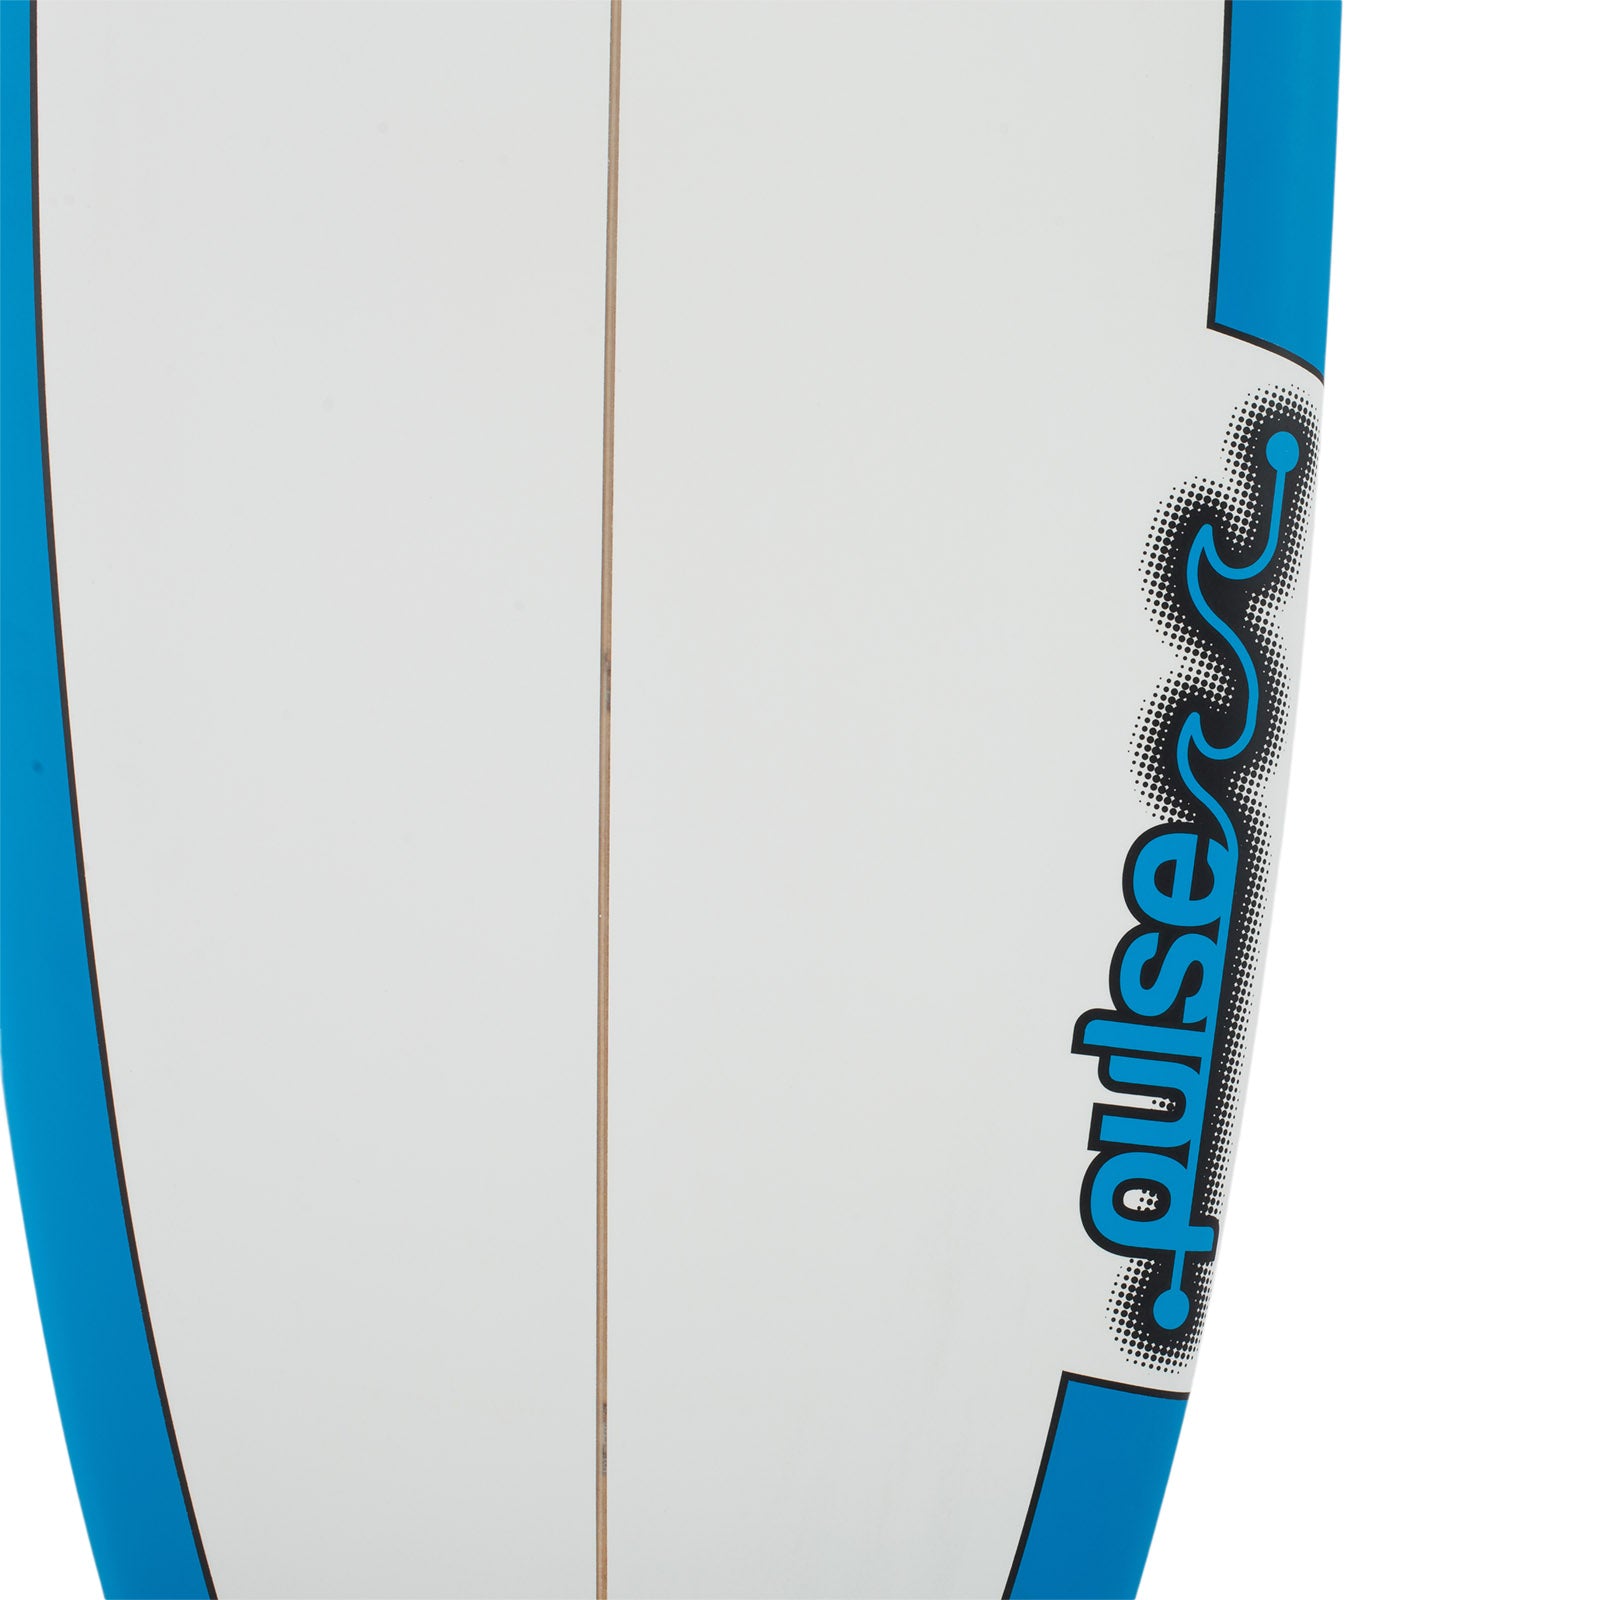 8ft Pulse Epoxy Mini Mal Surfboard by Australian Board Company | Funky Town Shop